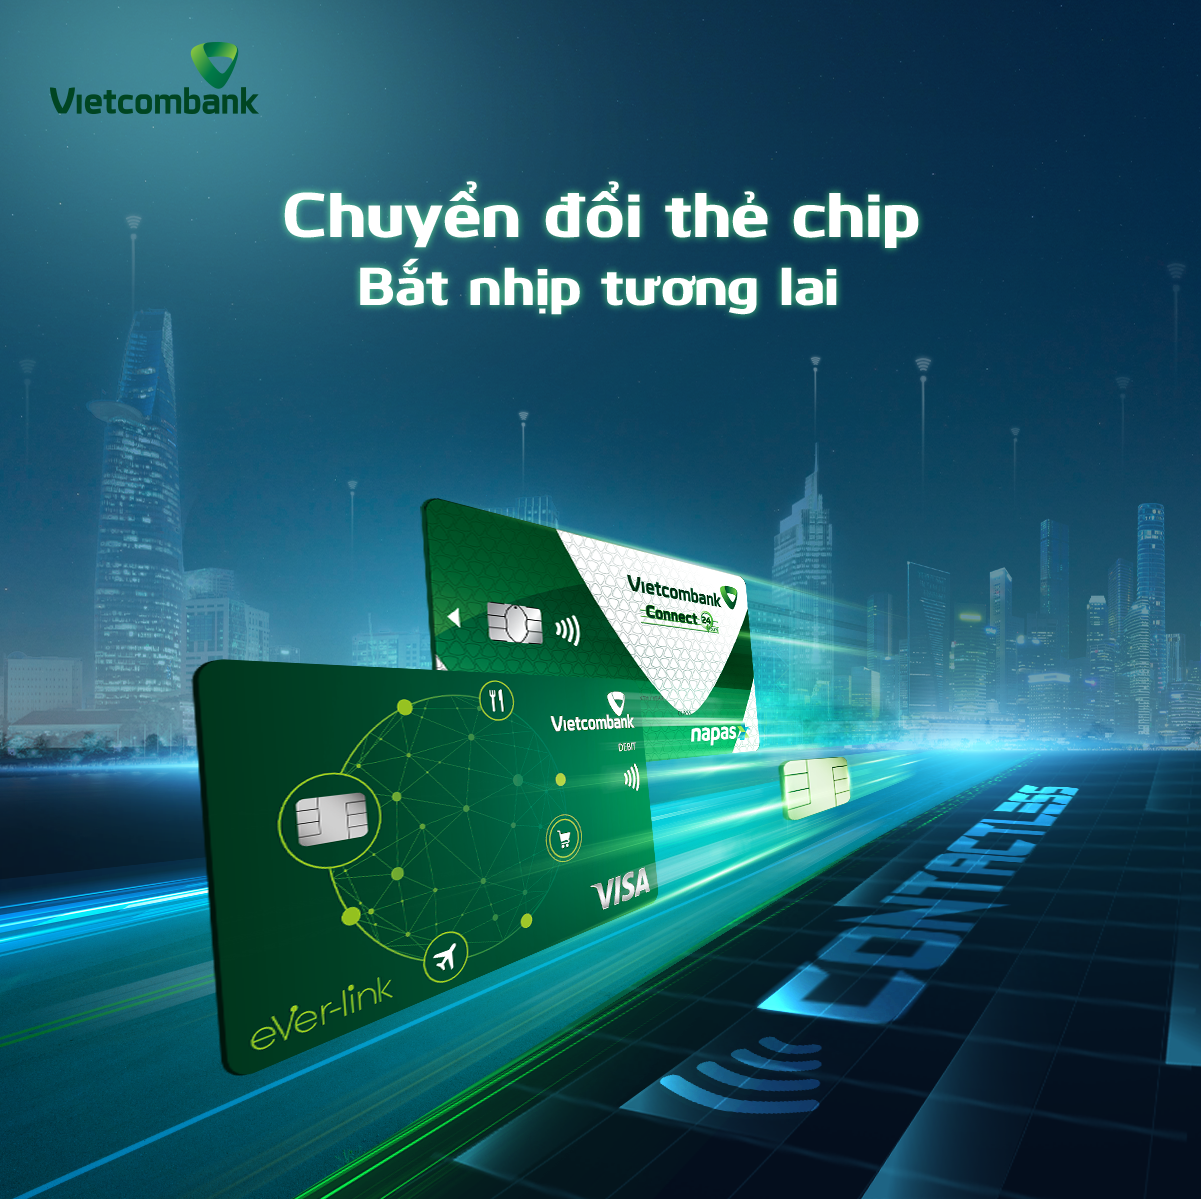 Thẻ Vietcombank công nghệ Chip contactless mang lại sự tiện lợi vô song với khả năng thanh toán chỉ bằng một chạm nhẹ. Điều này không chỉ giảm thời gian giao dịch và còn tạo ra một phong cách thanh toán hiện đại và nhanh chóng.